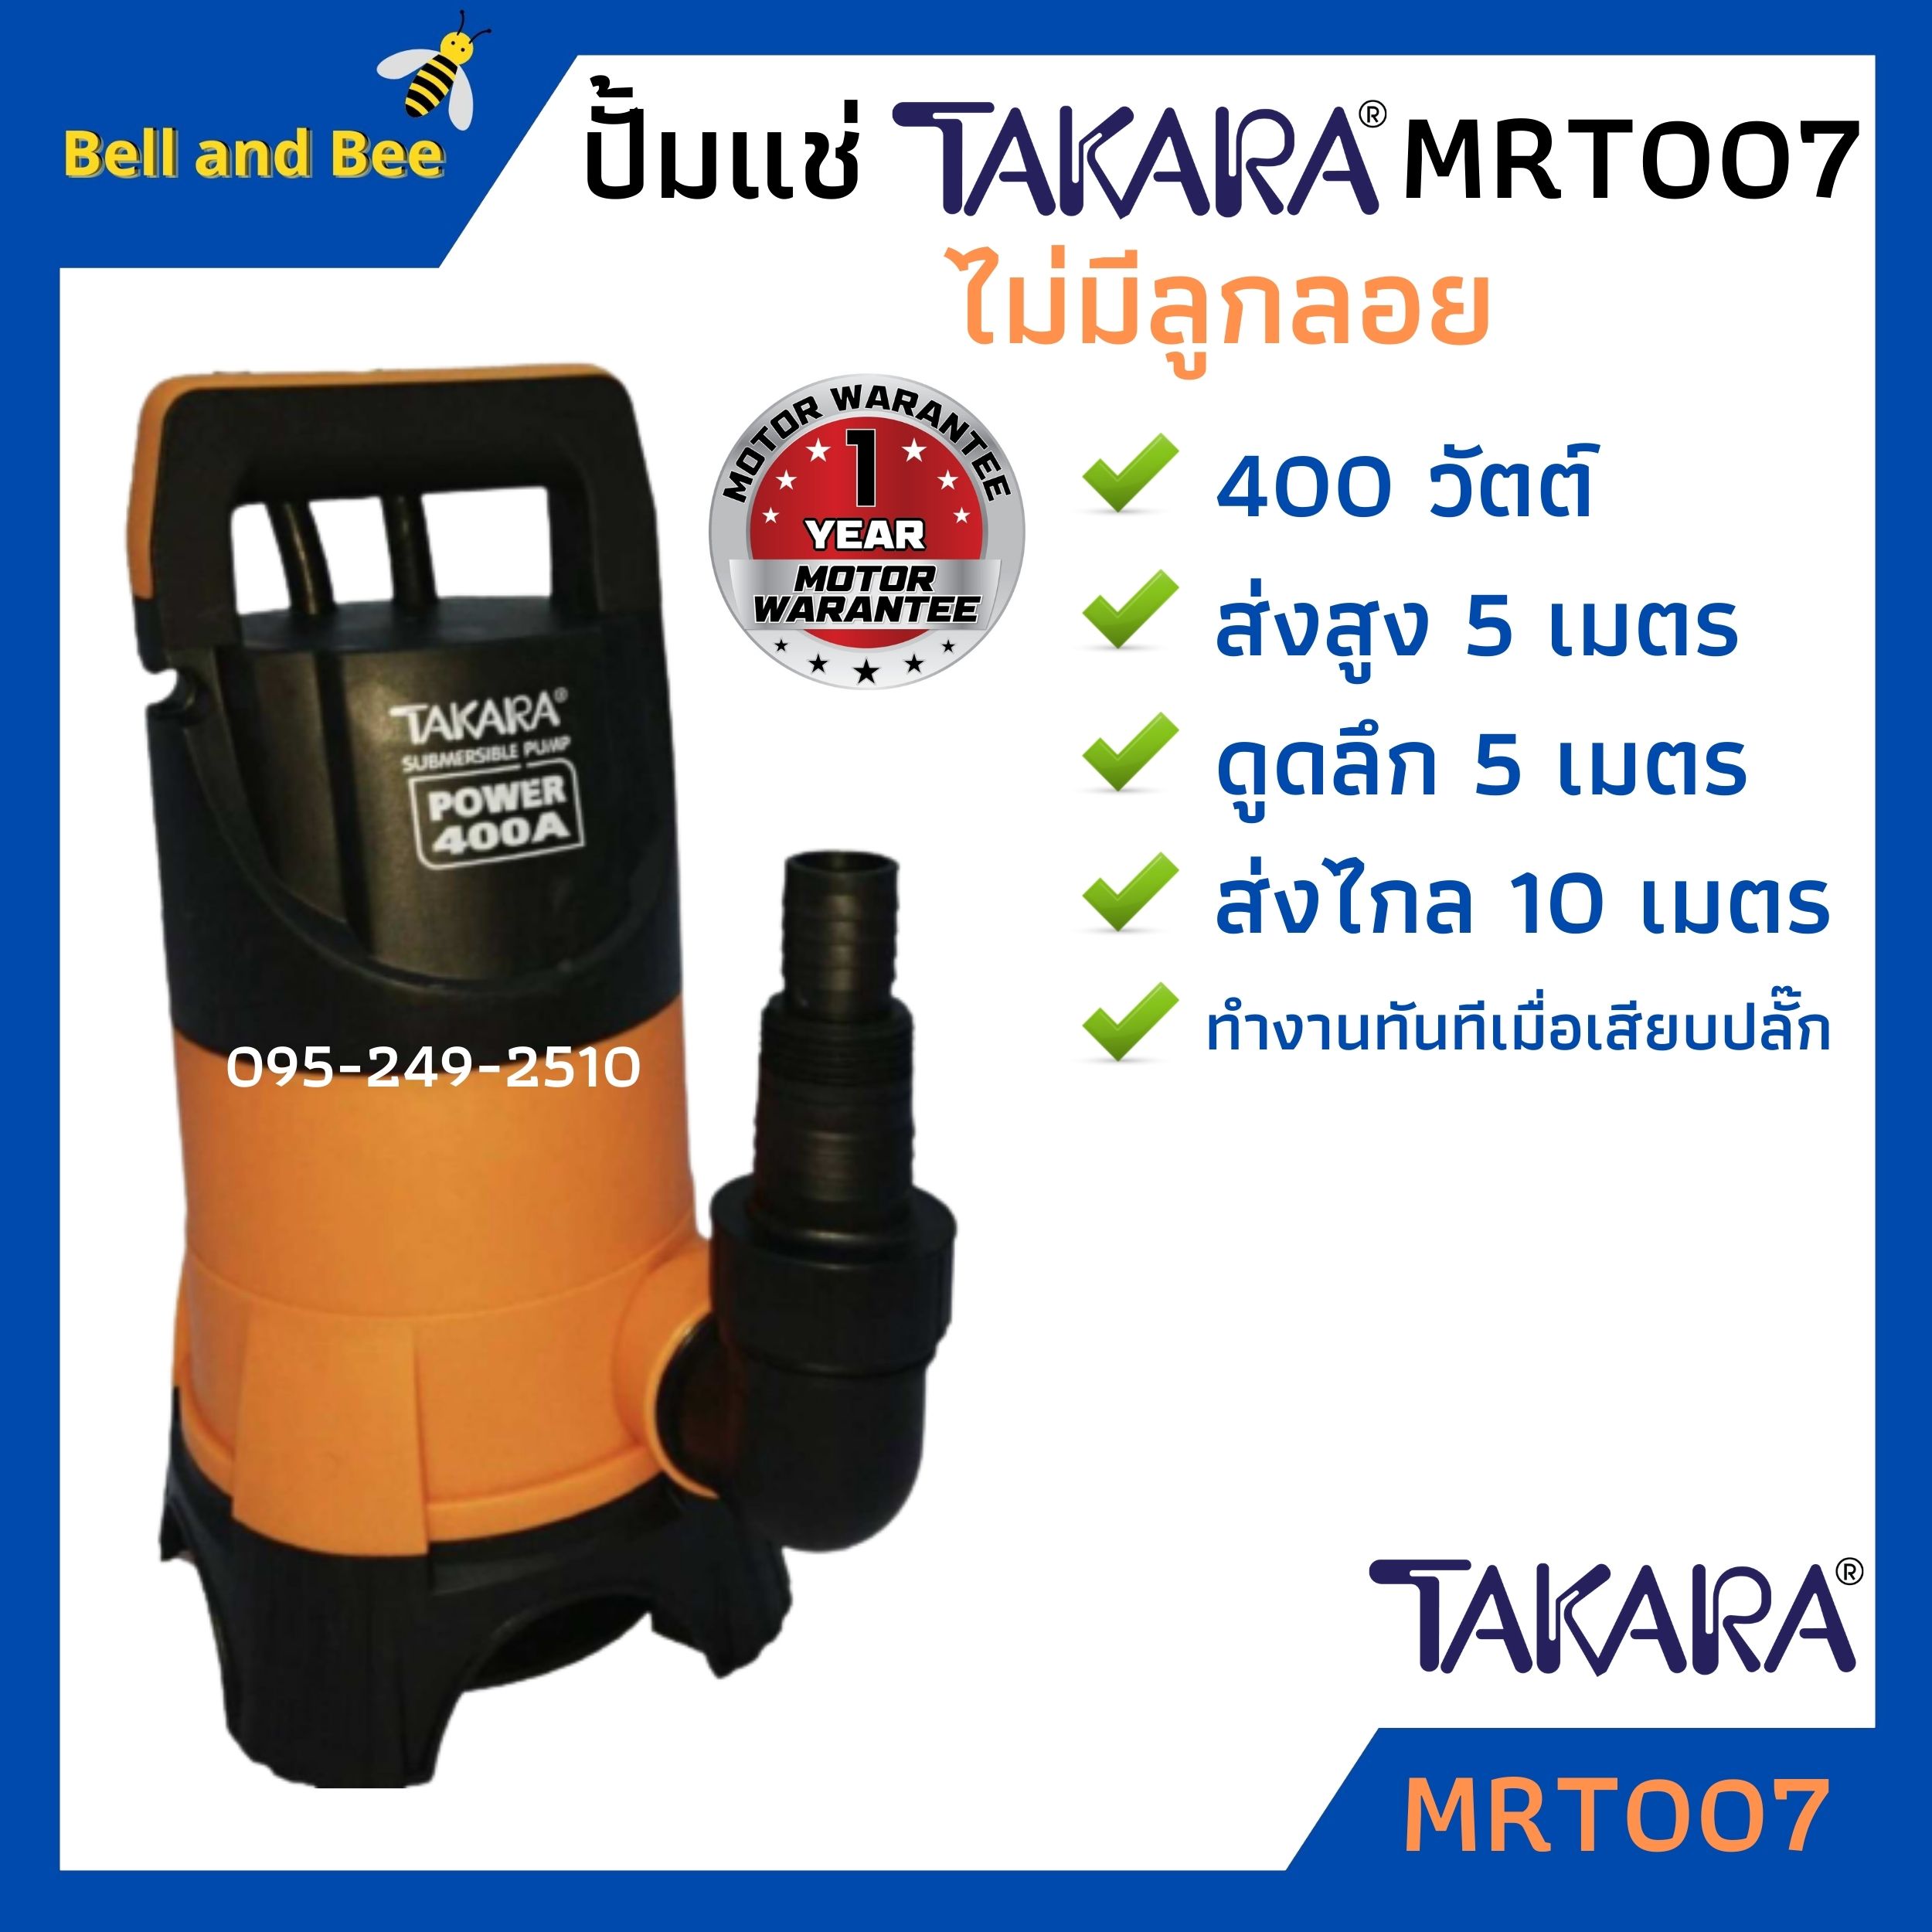 ปั้มจุ่ม/ปั้มแช่ ไดโว่ดูดน้ำสกปรก TAKARA รุ่น MRT007 ไม่มีลูกลอย